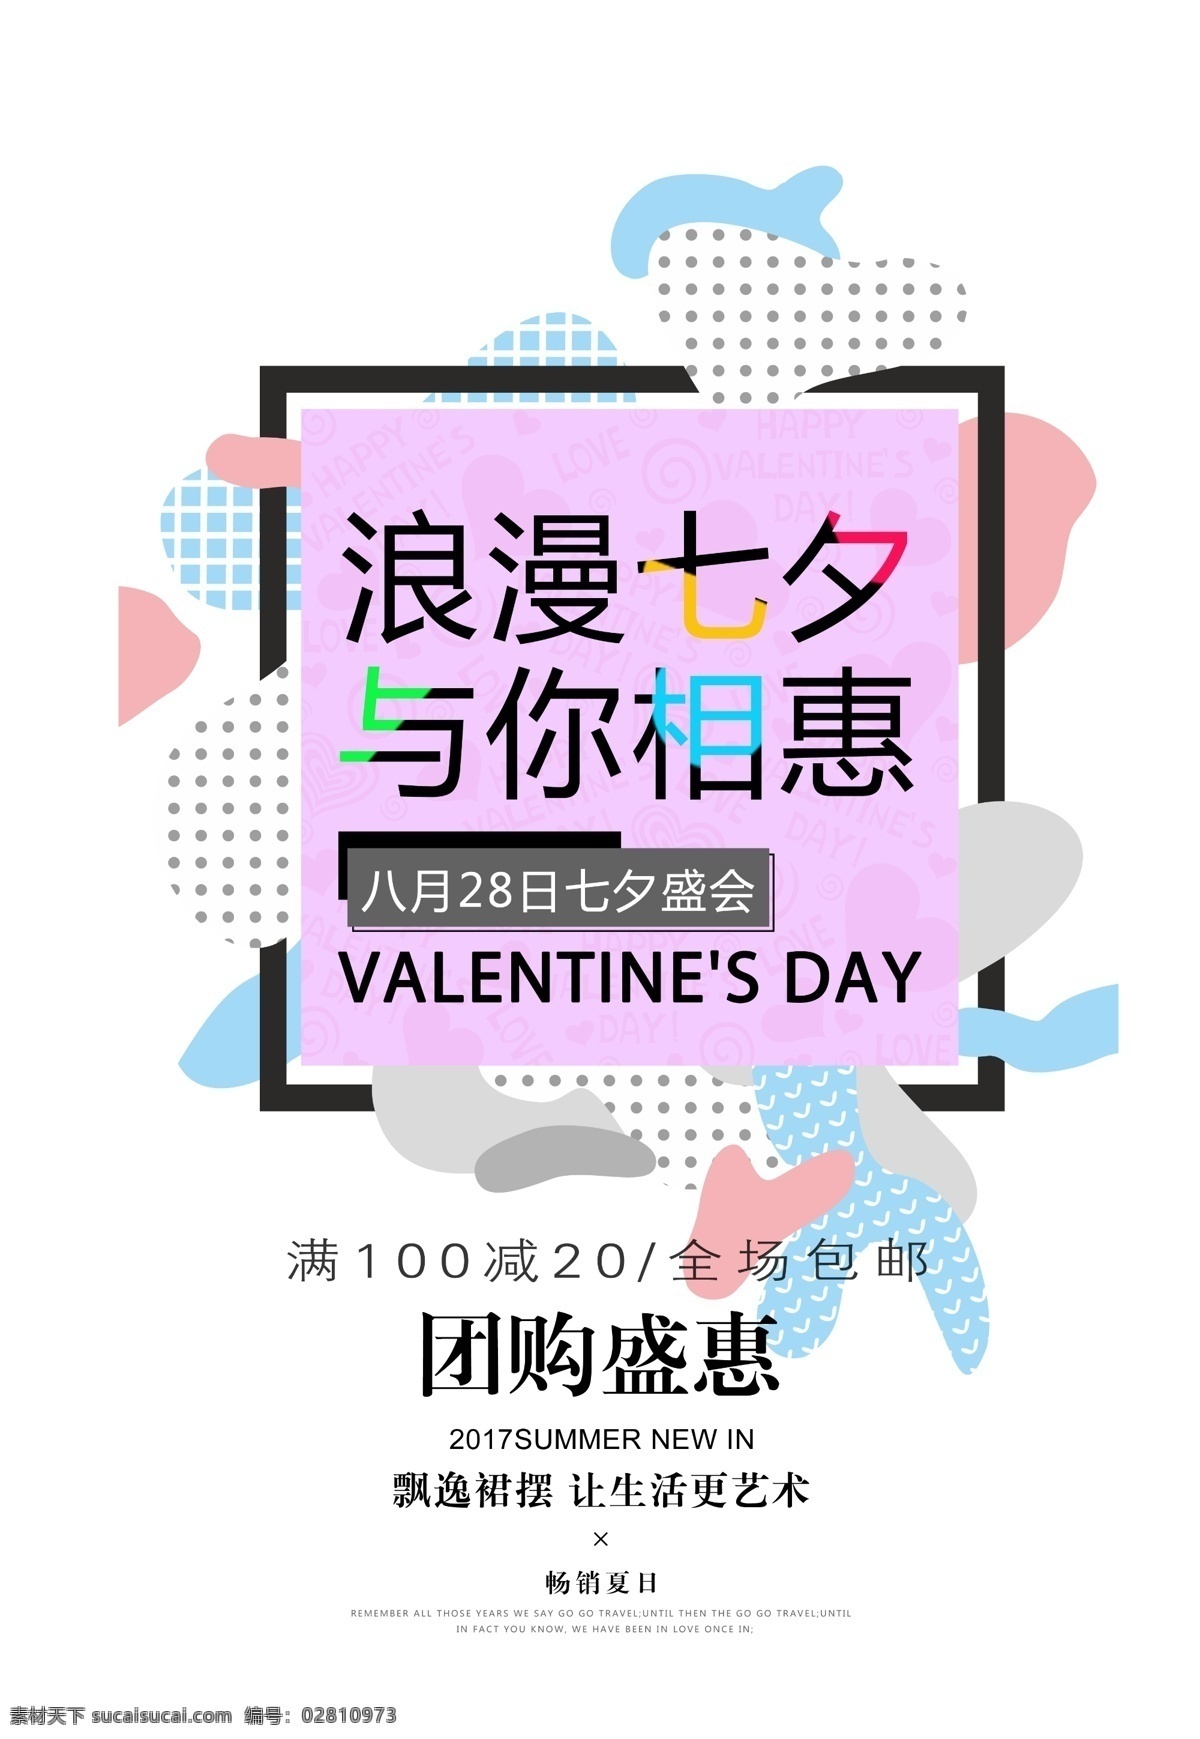 浪漫 情 定 七夕 促销 宣传海报 模板 情侣 海报 平面设计